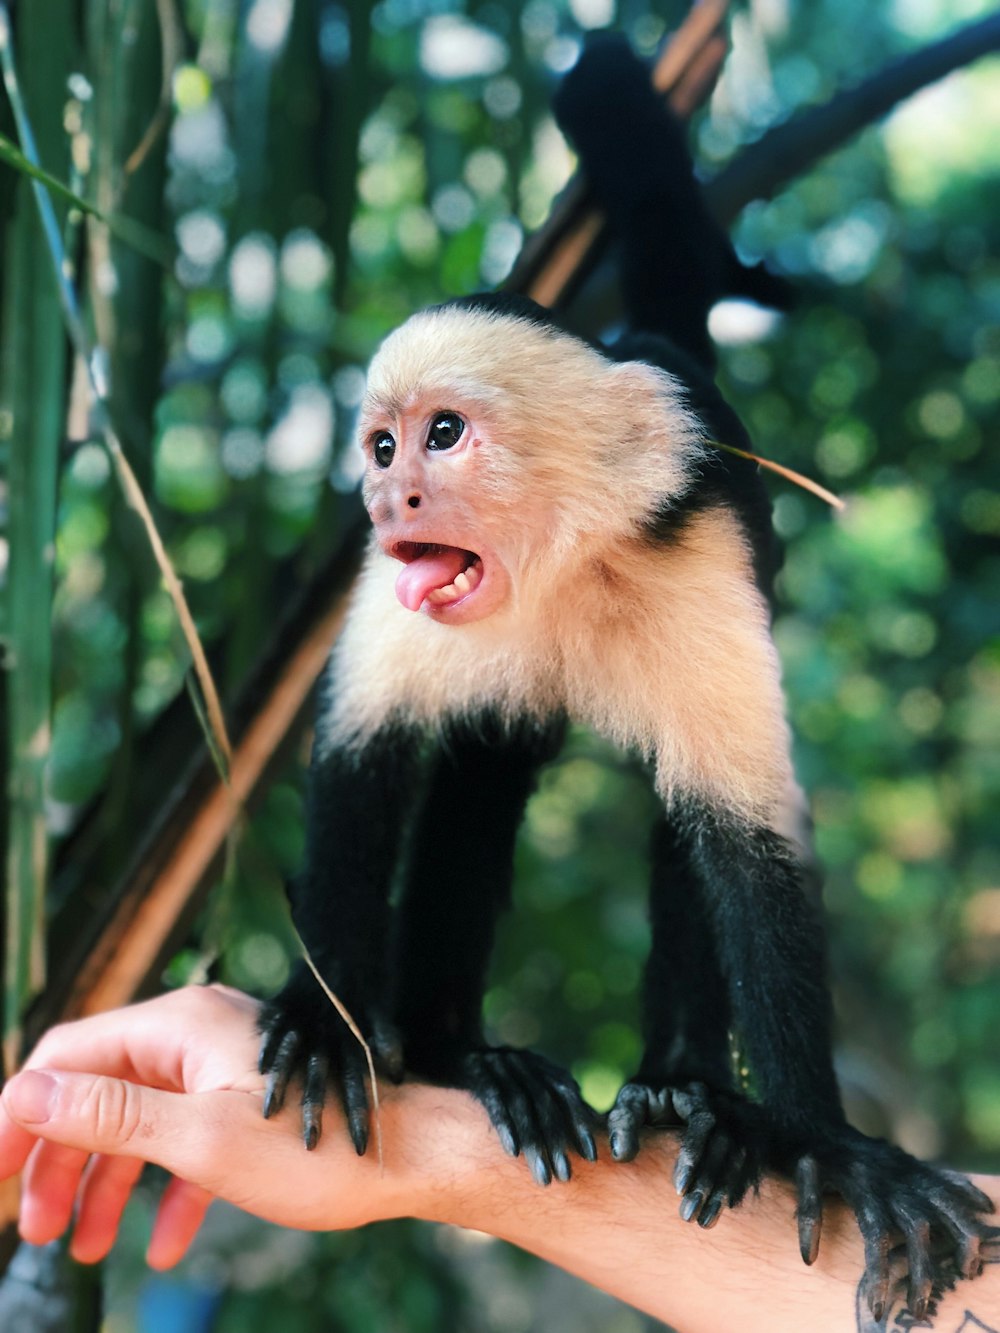 Fotografia de foco raso de macaco preto e branco no braço direito da pessoa